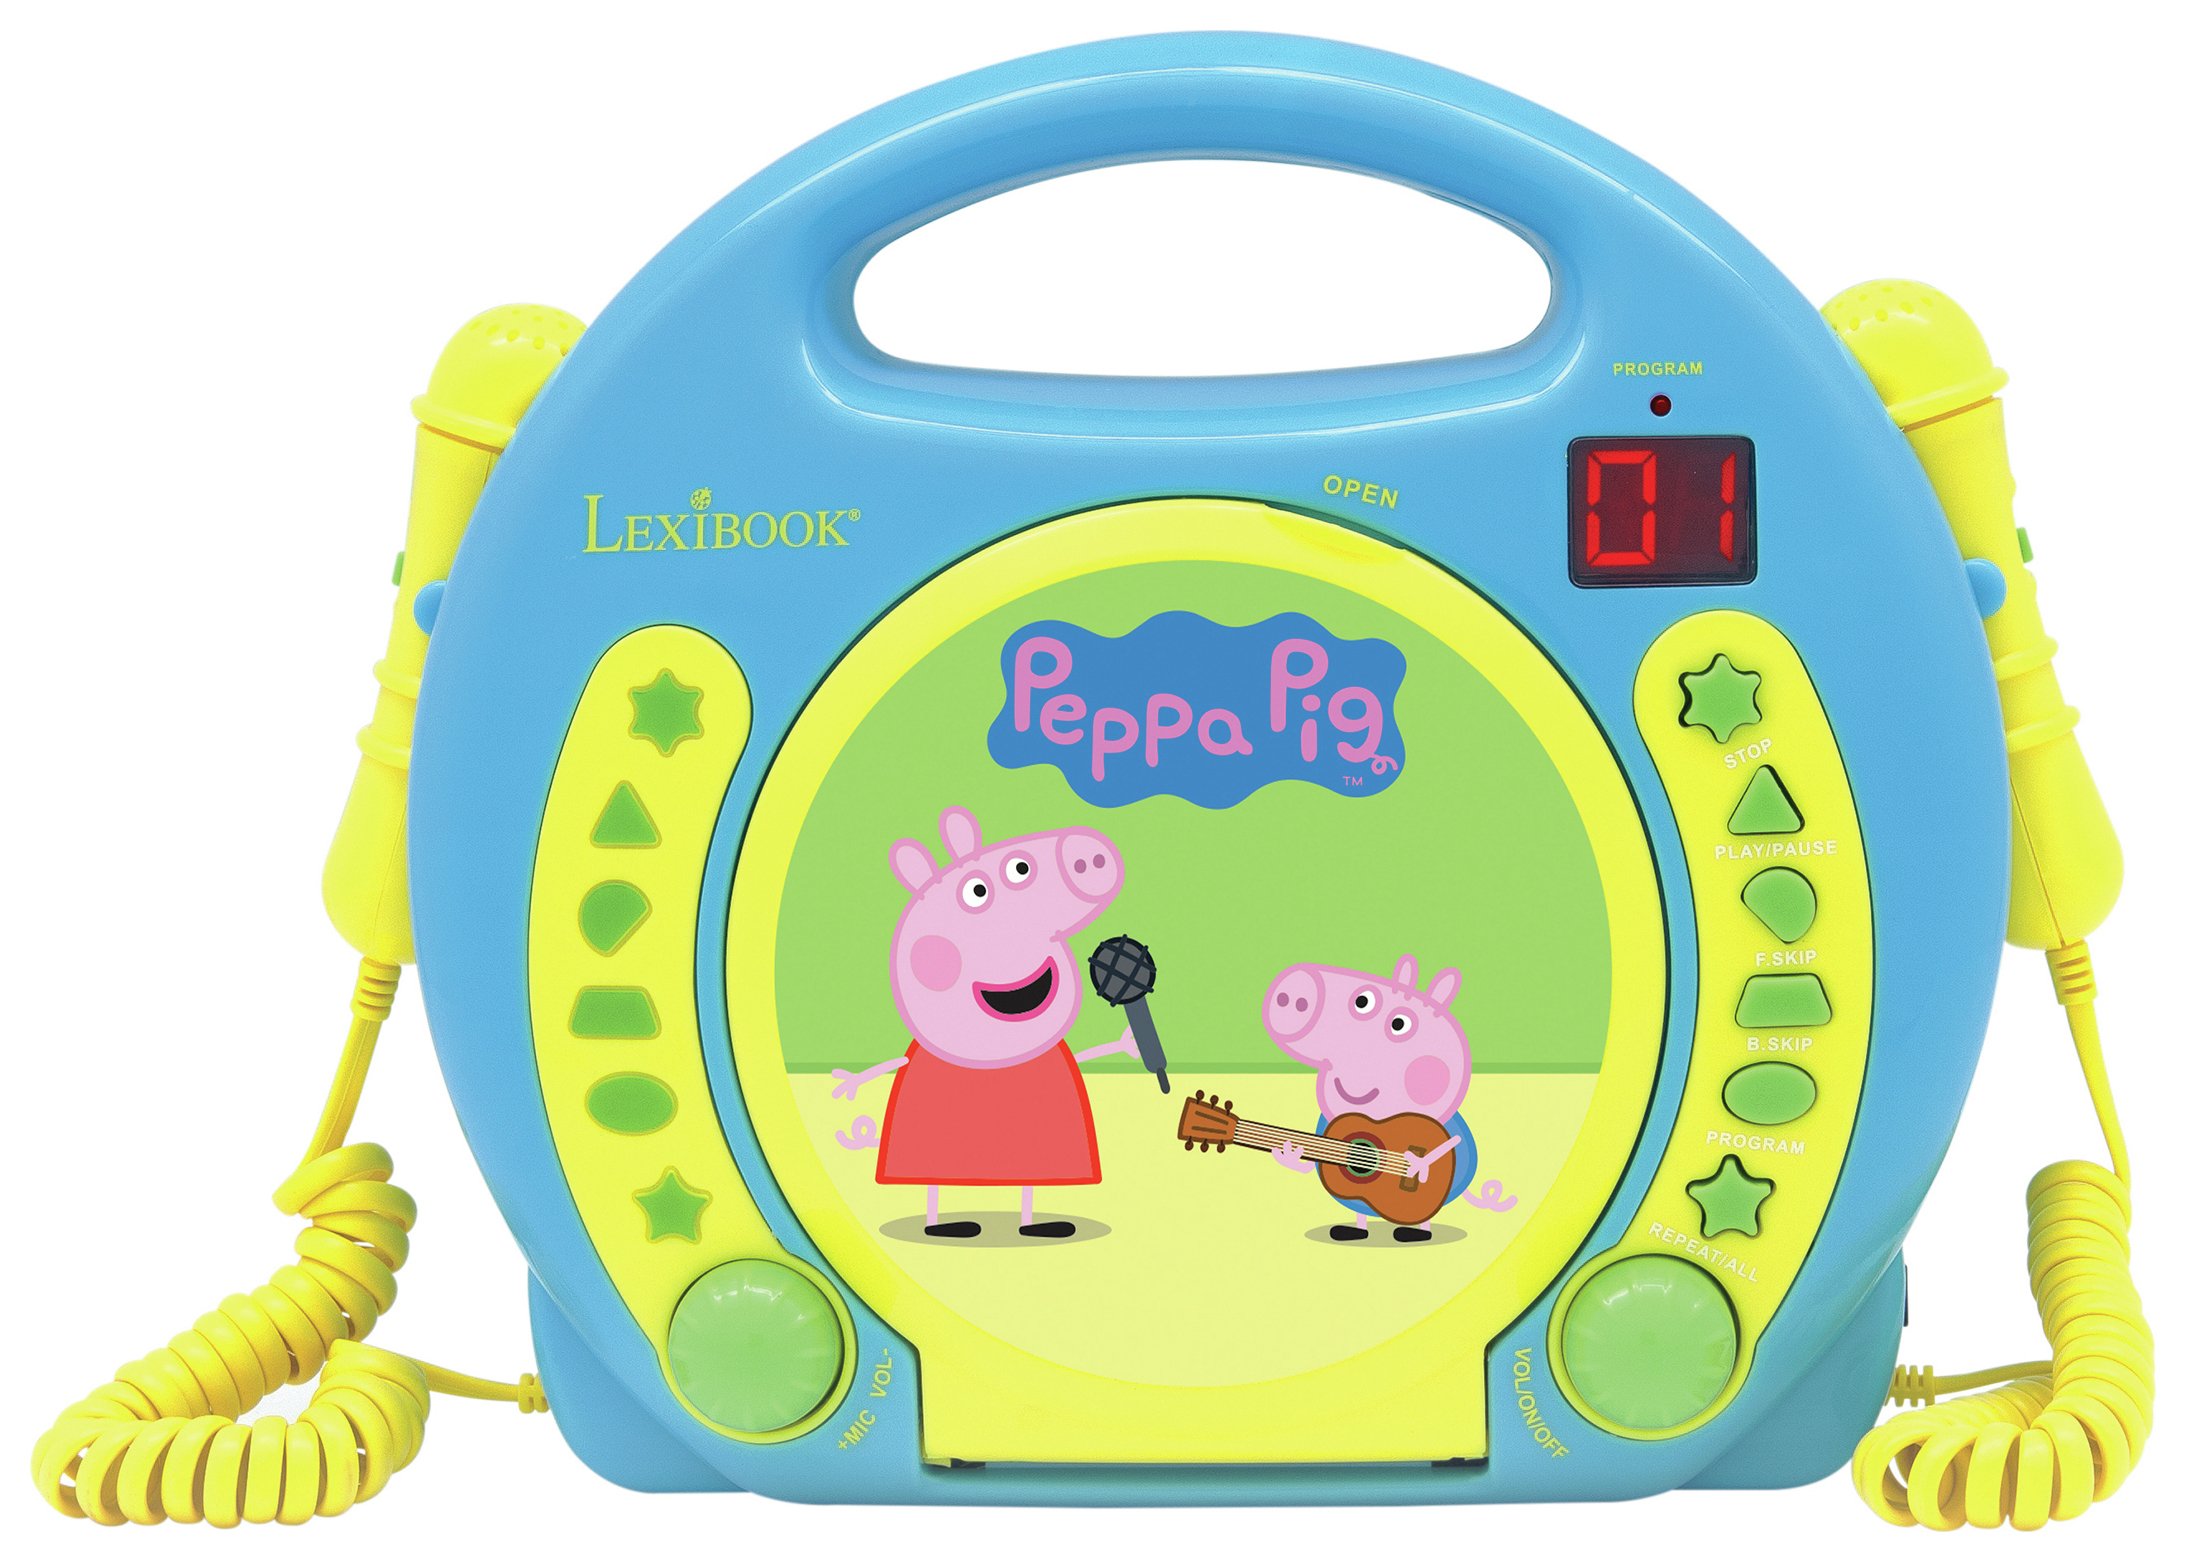 Peppa Pig Karaoke CD Player.